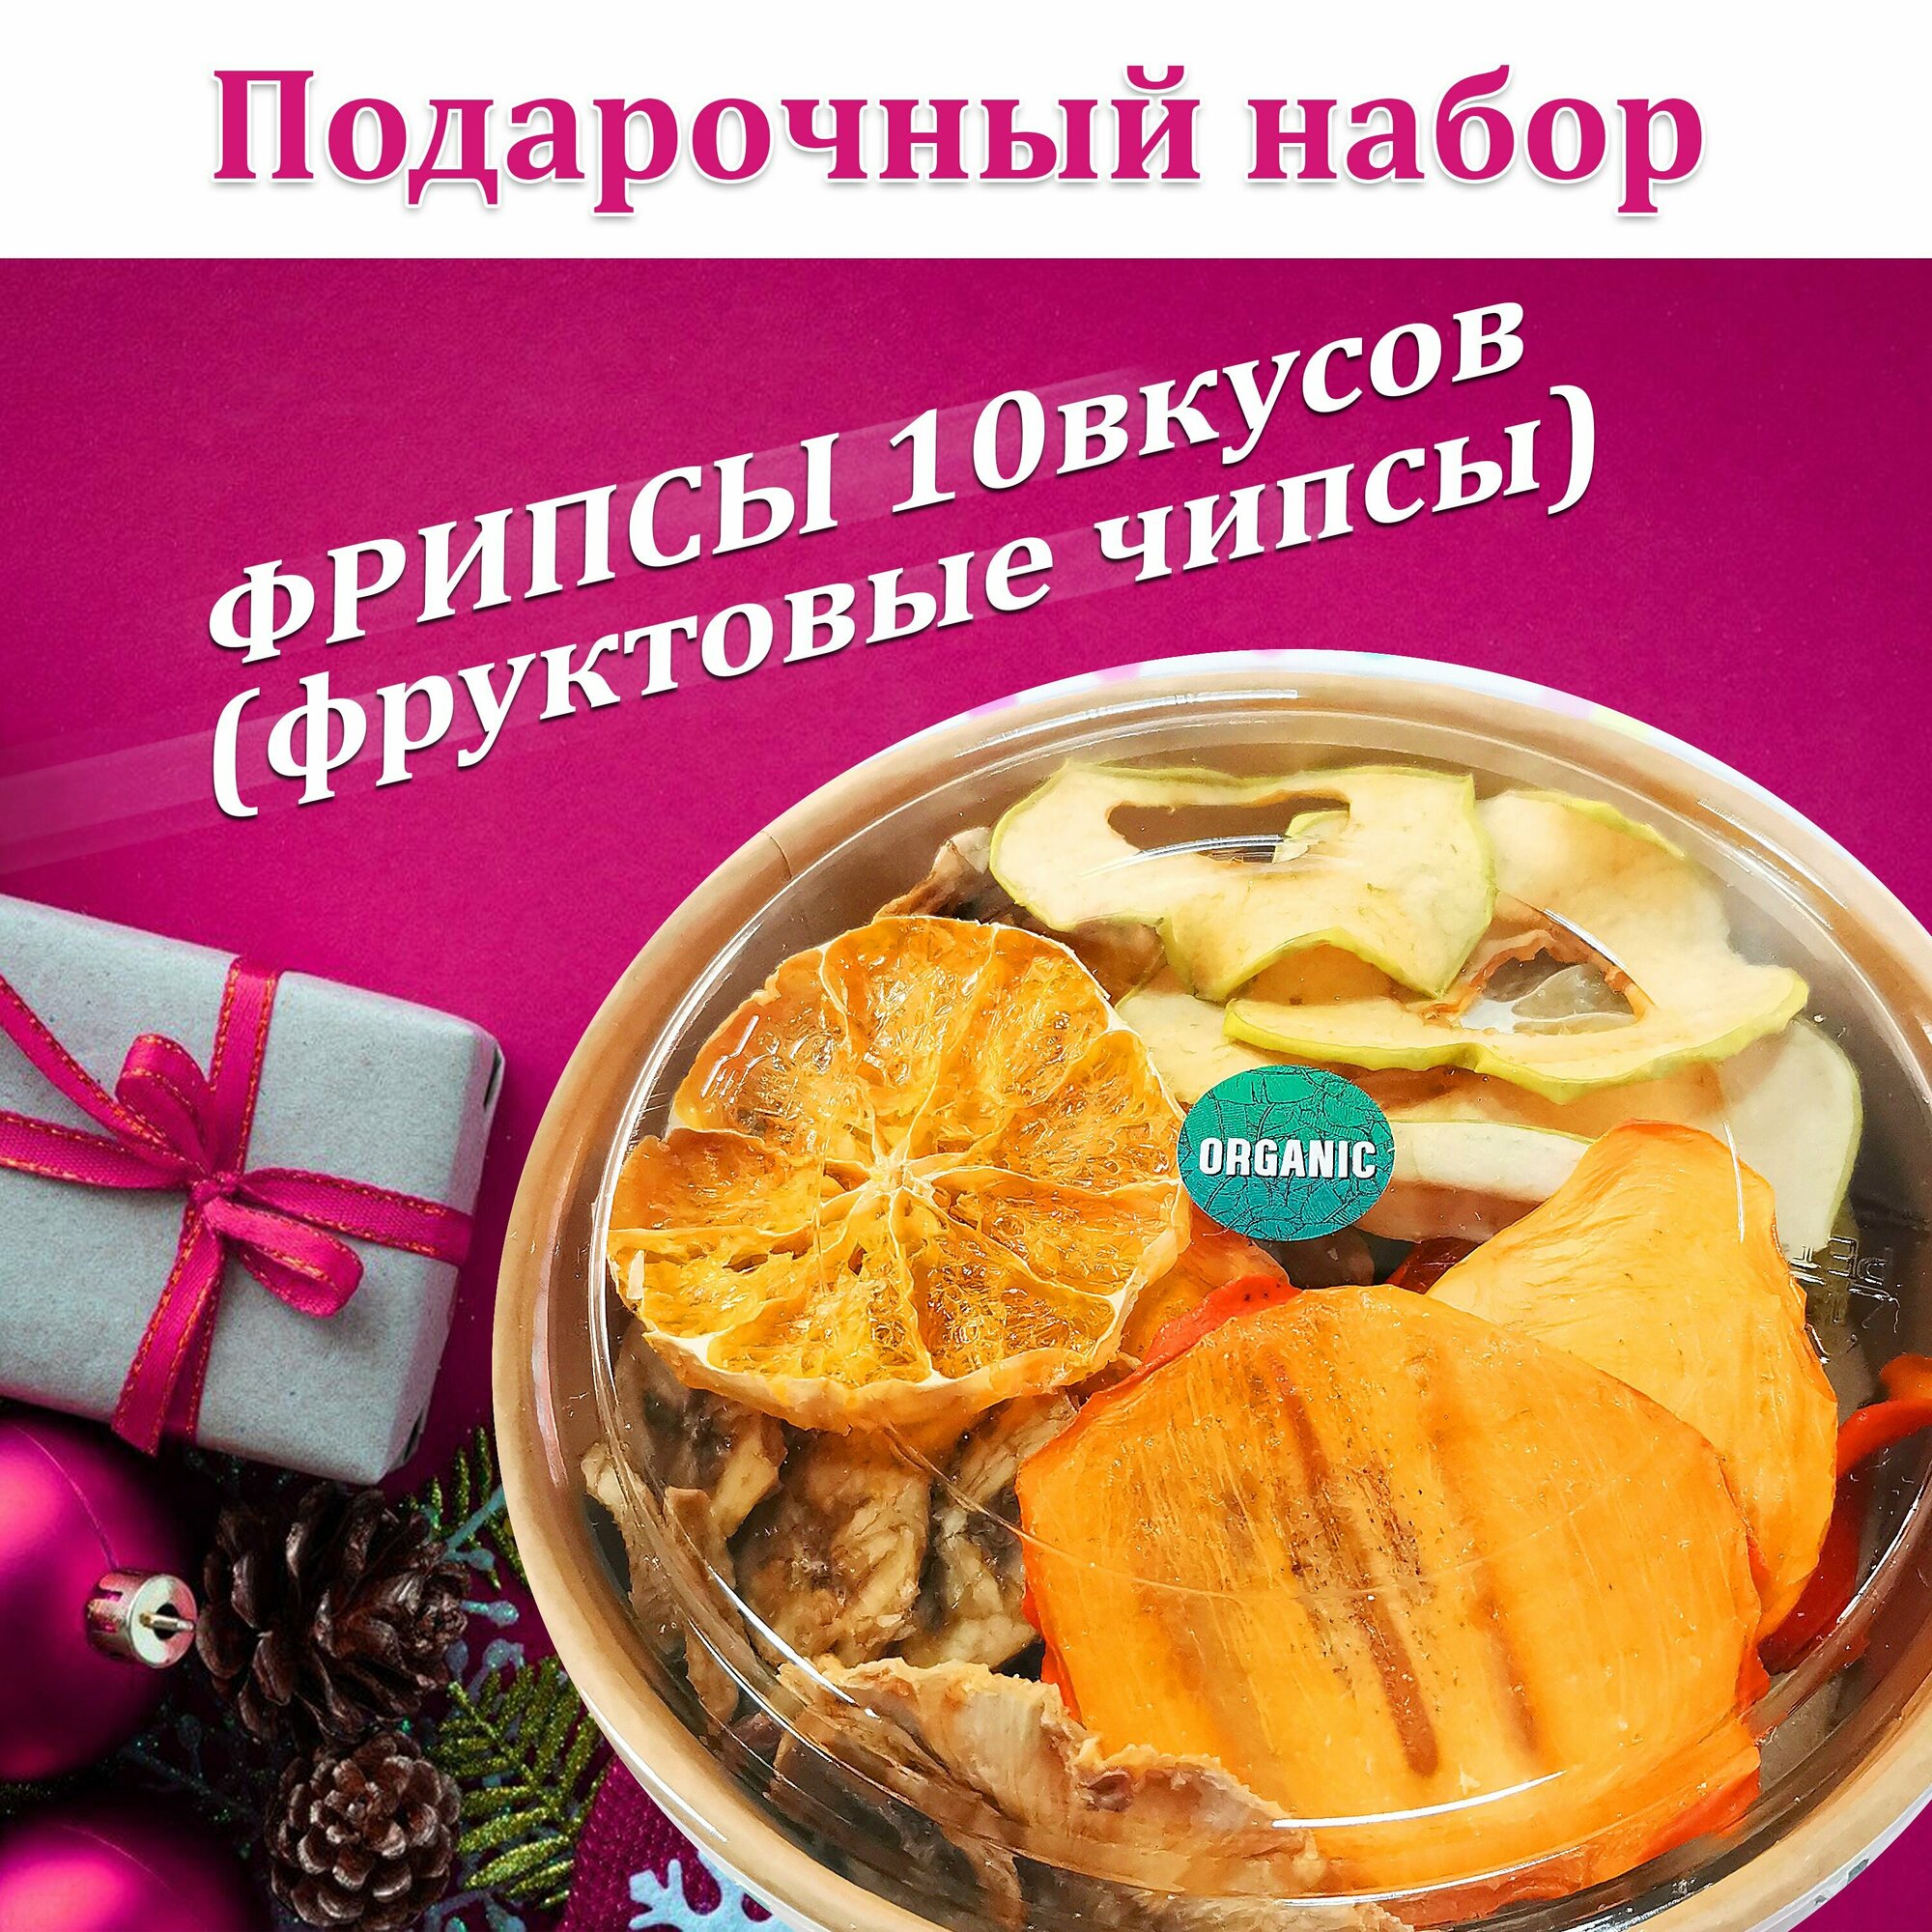 Набор подарочный здорового питания, фрипсы (фруктовые чипсы) "10 вкусов", 100гр, низкотемпературная сушка